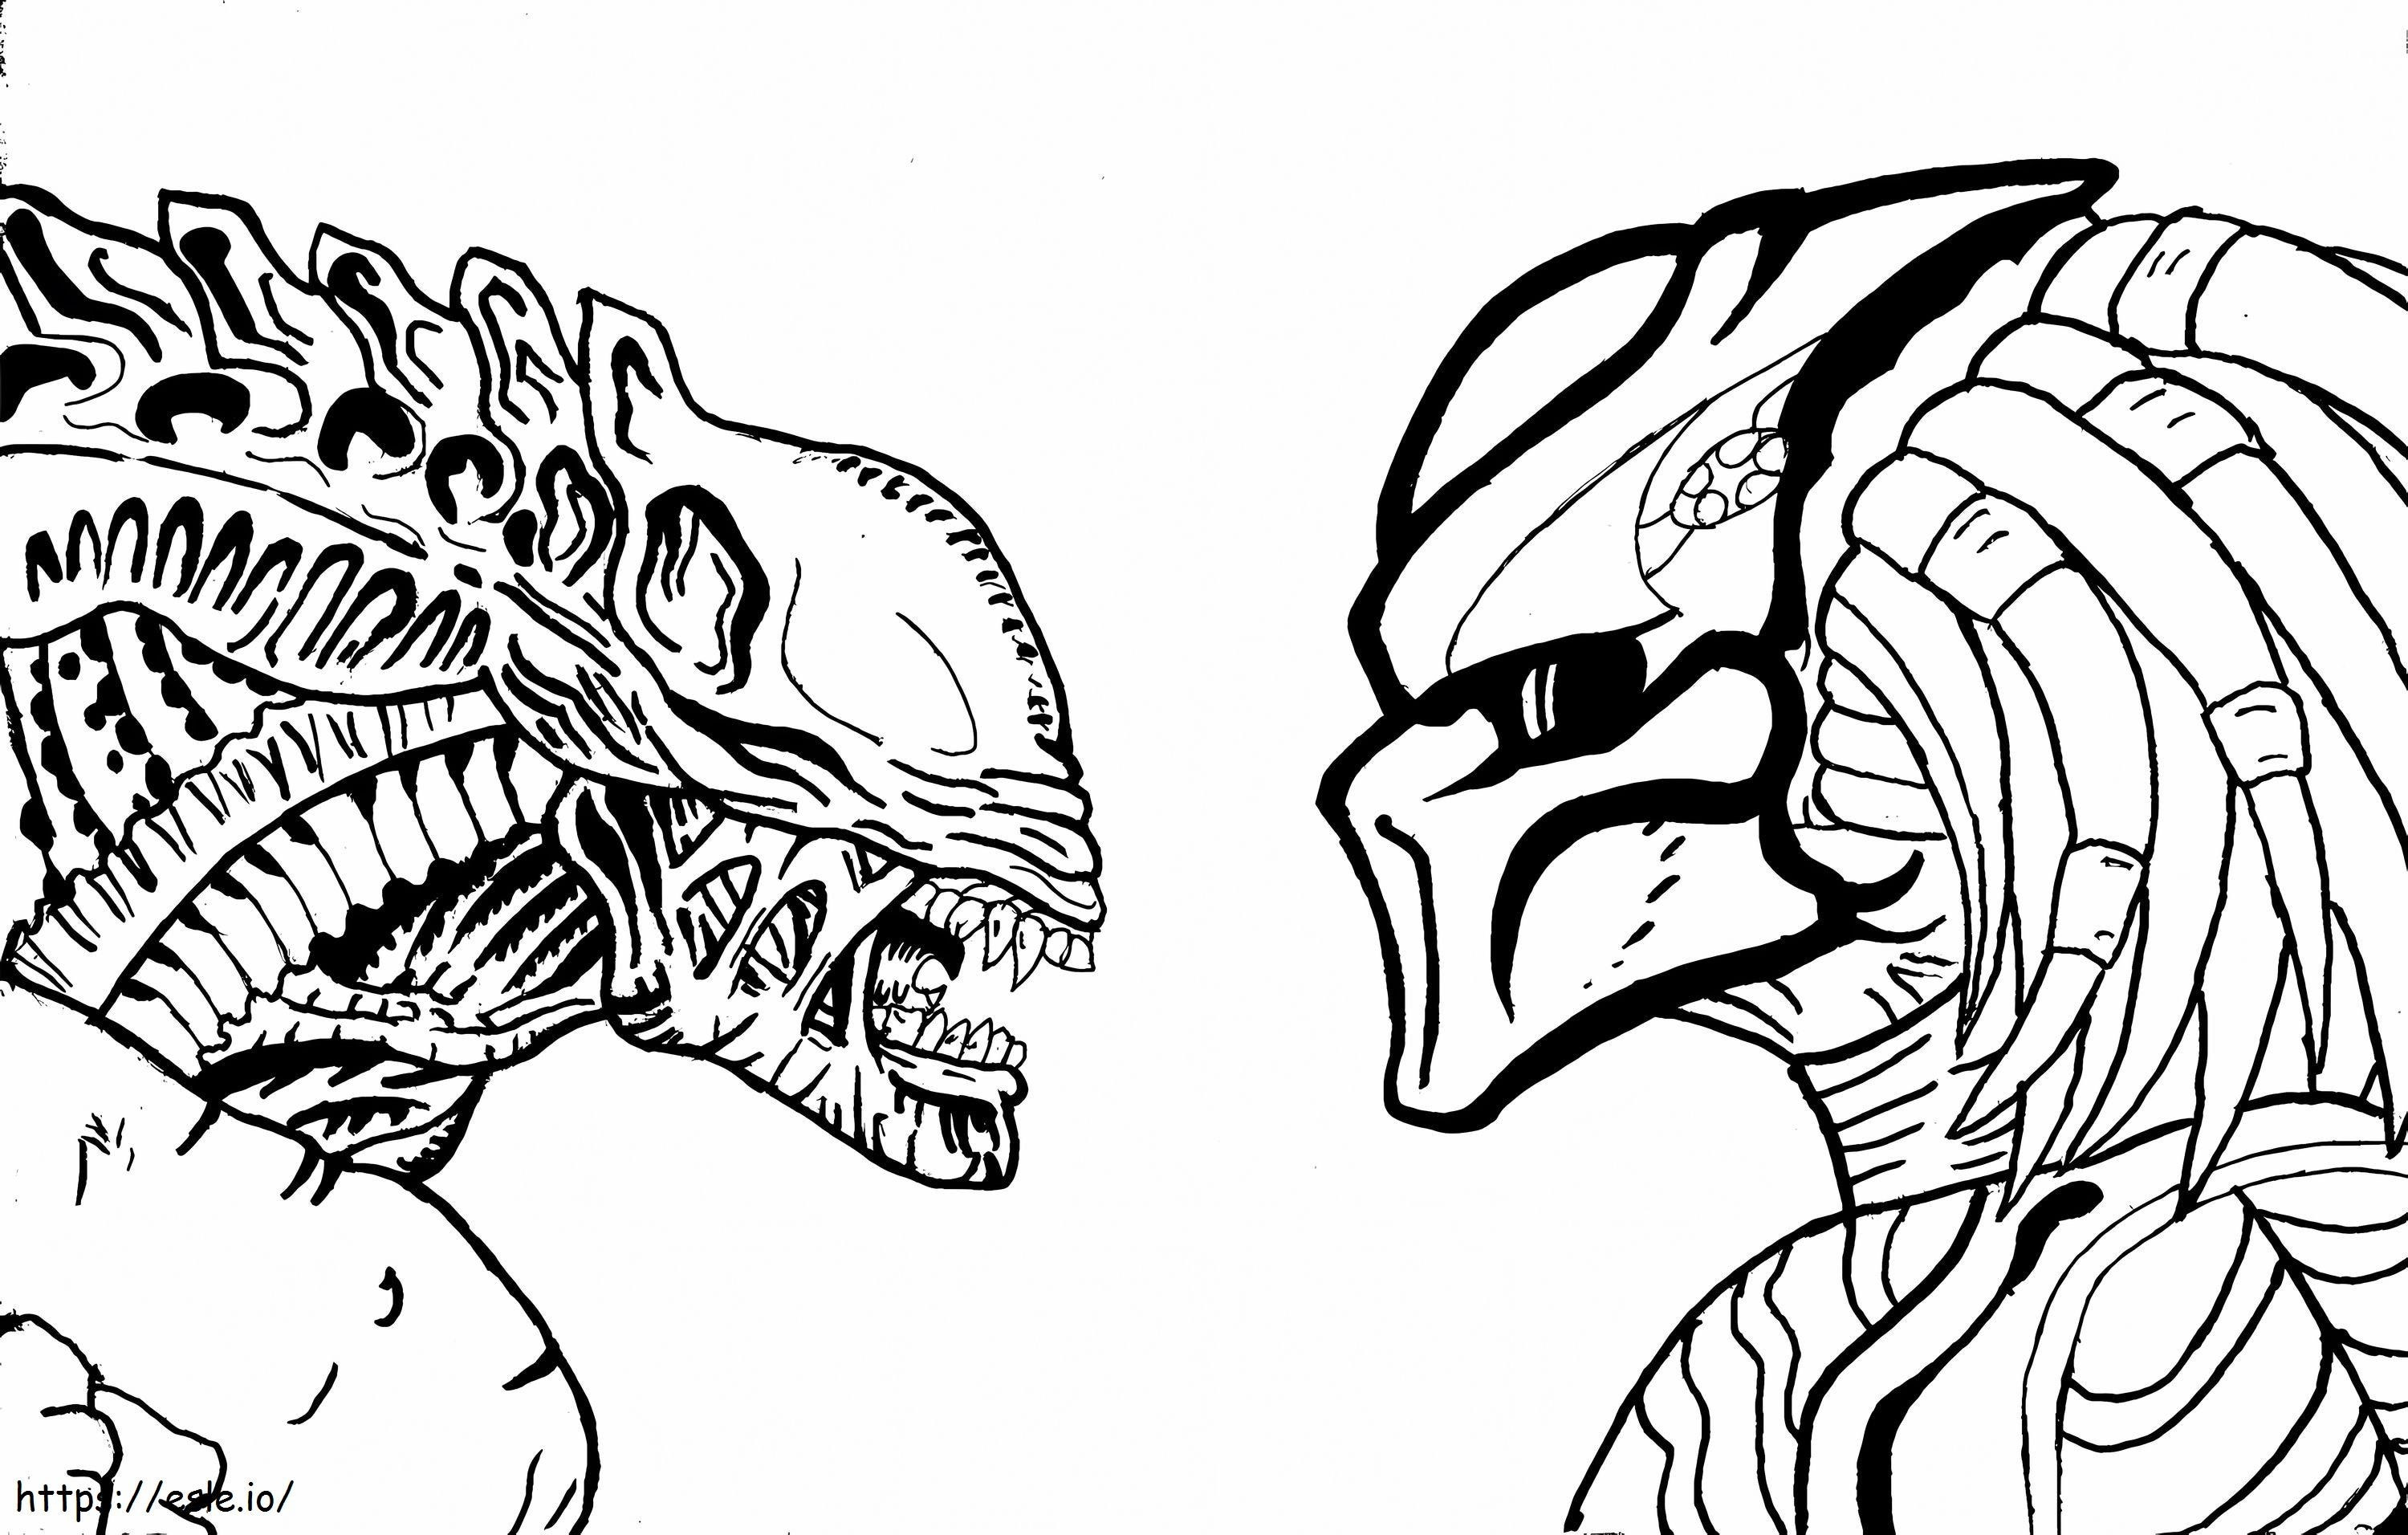 Coloriage  Est Alien Vs Predator Par Dragokaiju2000 D9Uxxko à imprimer dessin